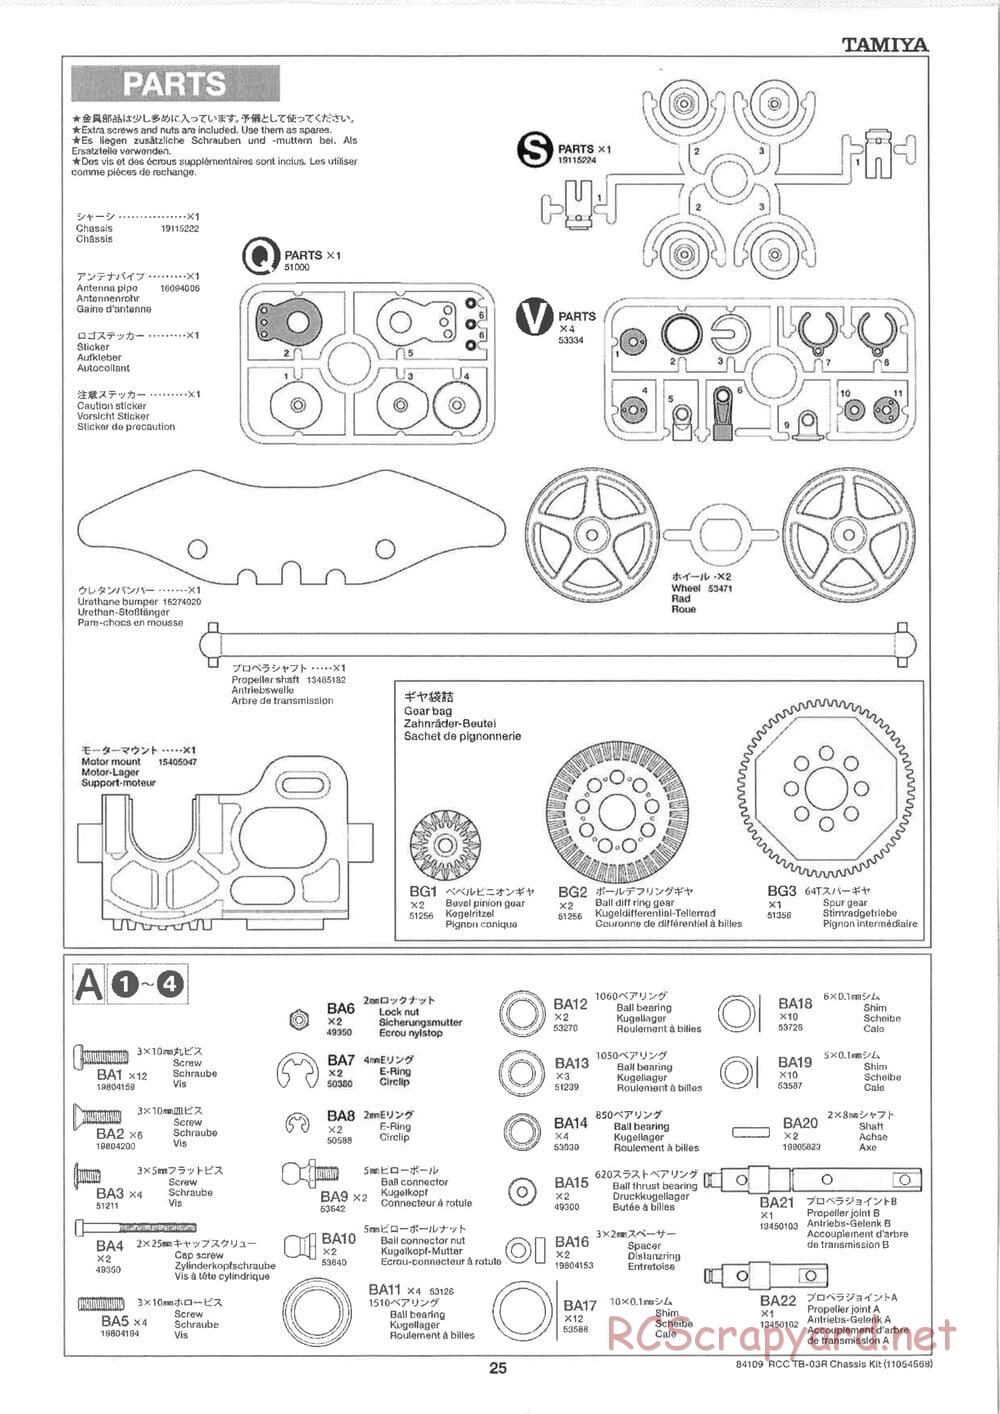 Tamiya - TB-03R Chassis - Manual - Page 25